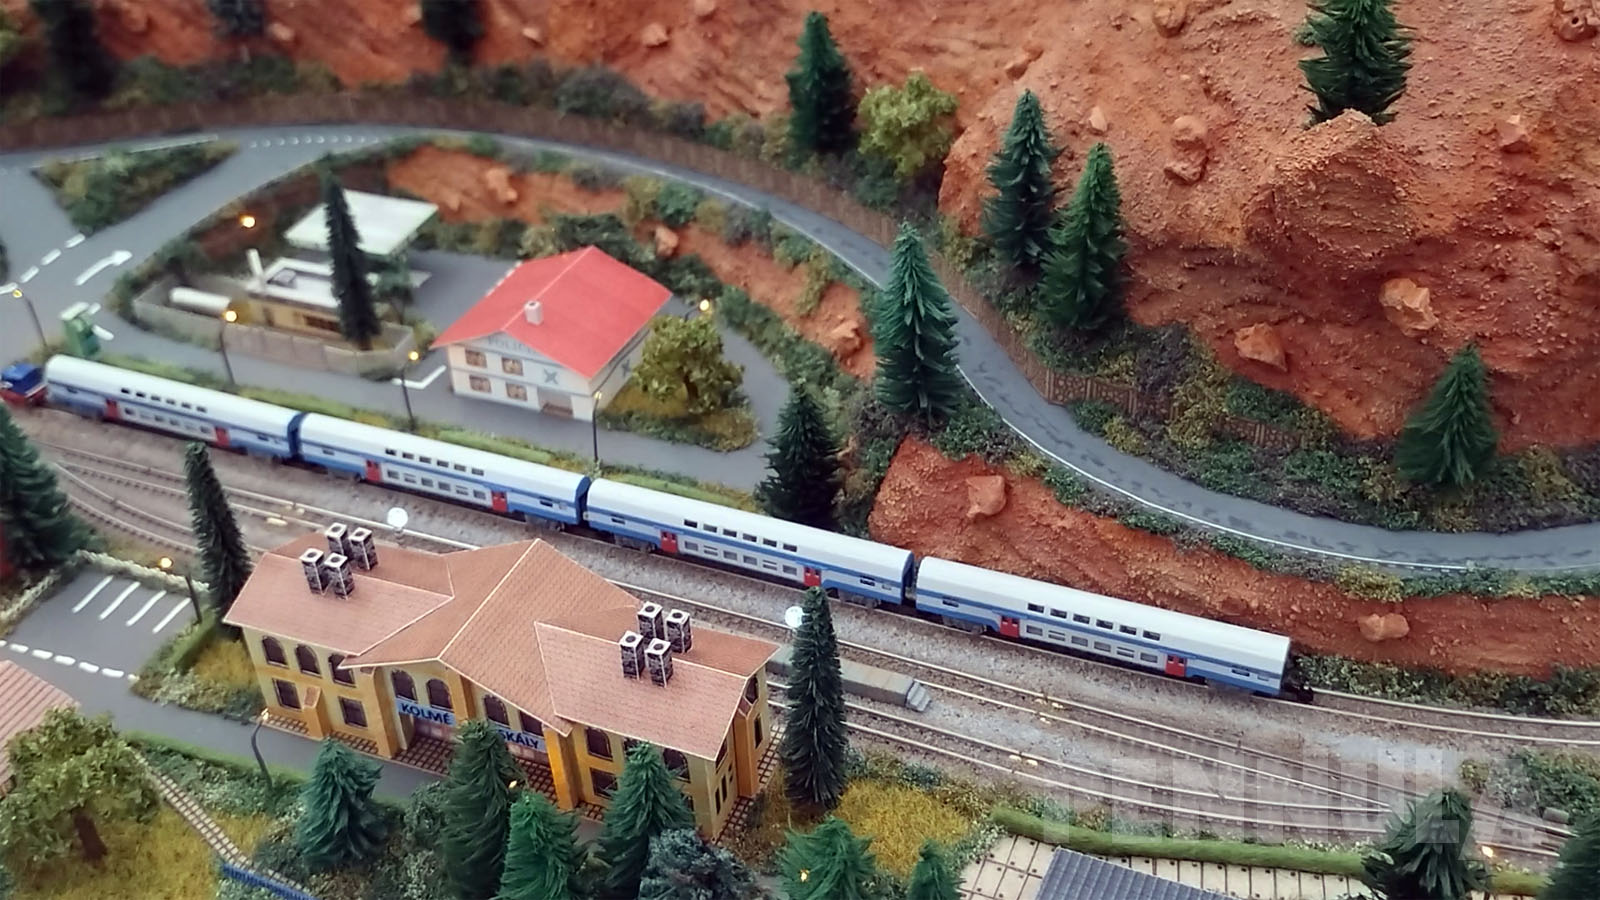 Und wie bereits im Titel dieses Modellbahn-Videos von Pennula zu lesen ist, schauen wir uns heute eine der wohl kleinsten Modellbahnanlagen der Welt an, nämlich die Miniaturwelt, die von Richard Kříž aus der Tschechischen Republik gebaut wurde.